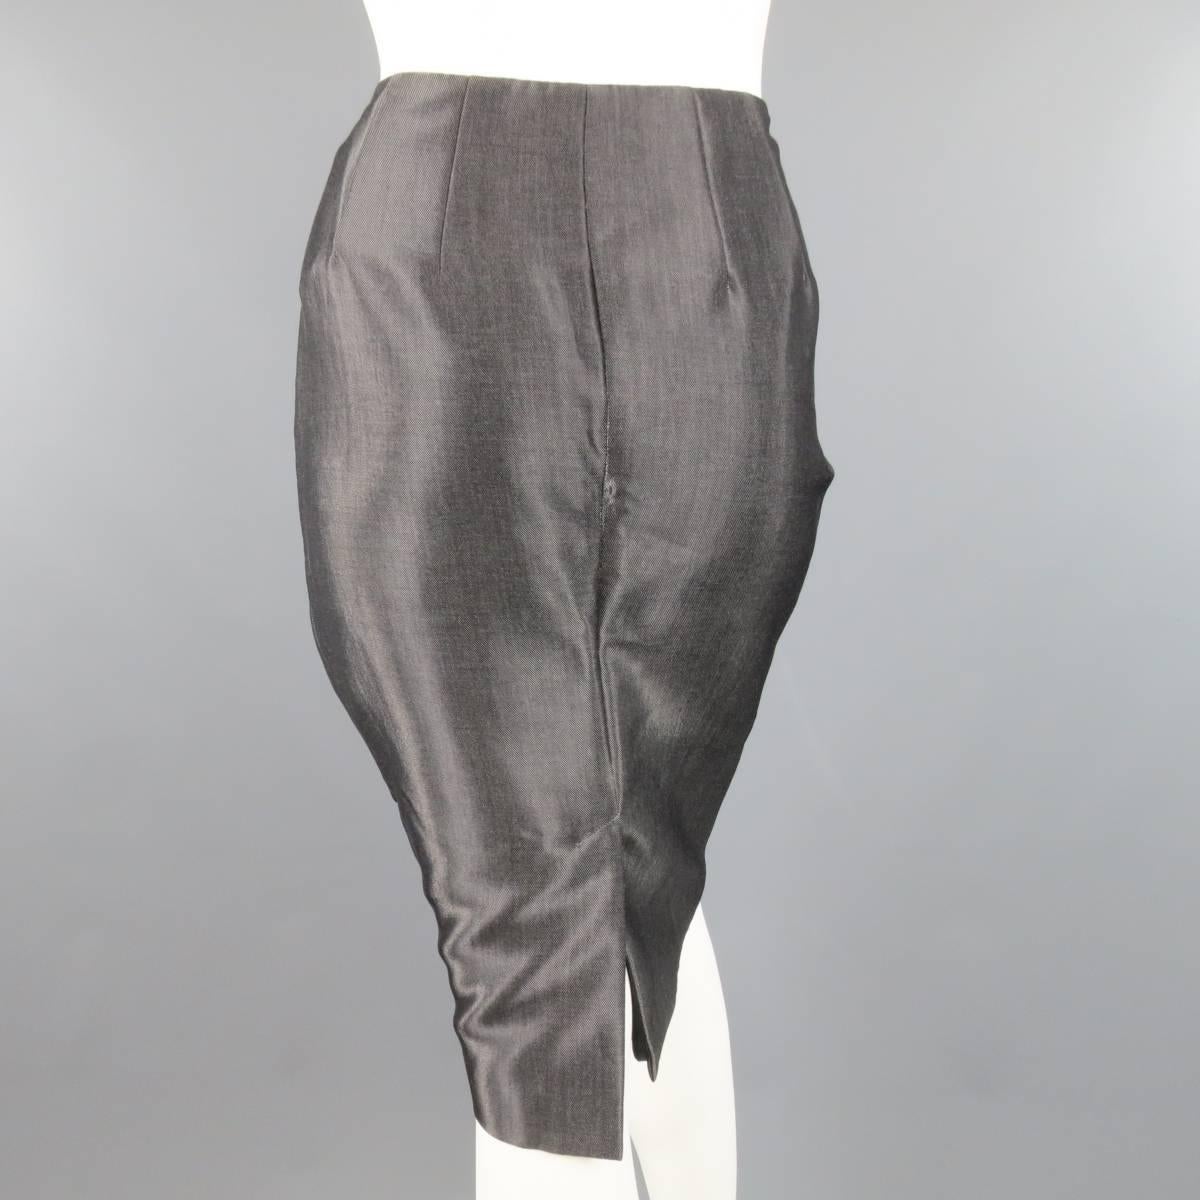 RALPH LAUREN COLLECTION Pencil Skirt Size 4 Metallic Grey Wool Blend ...